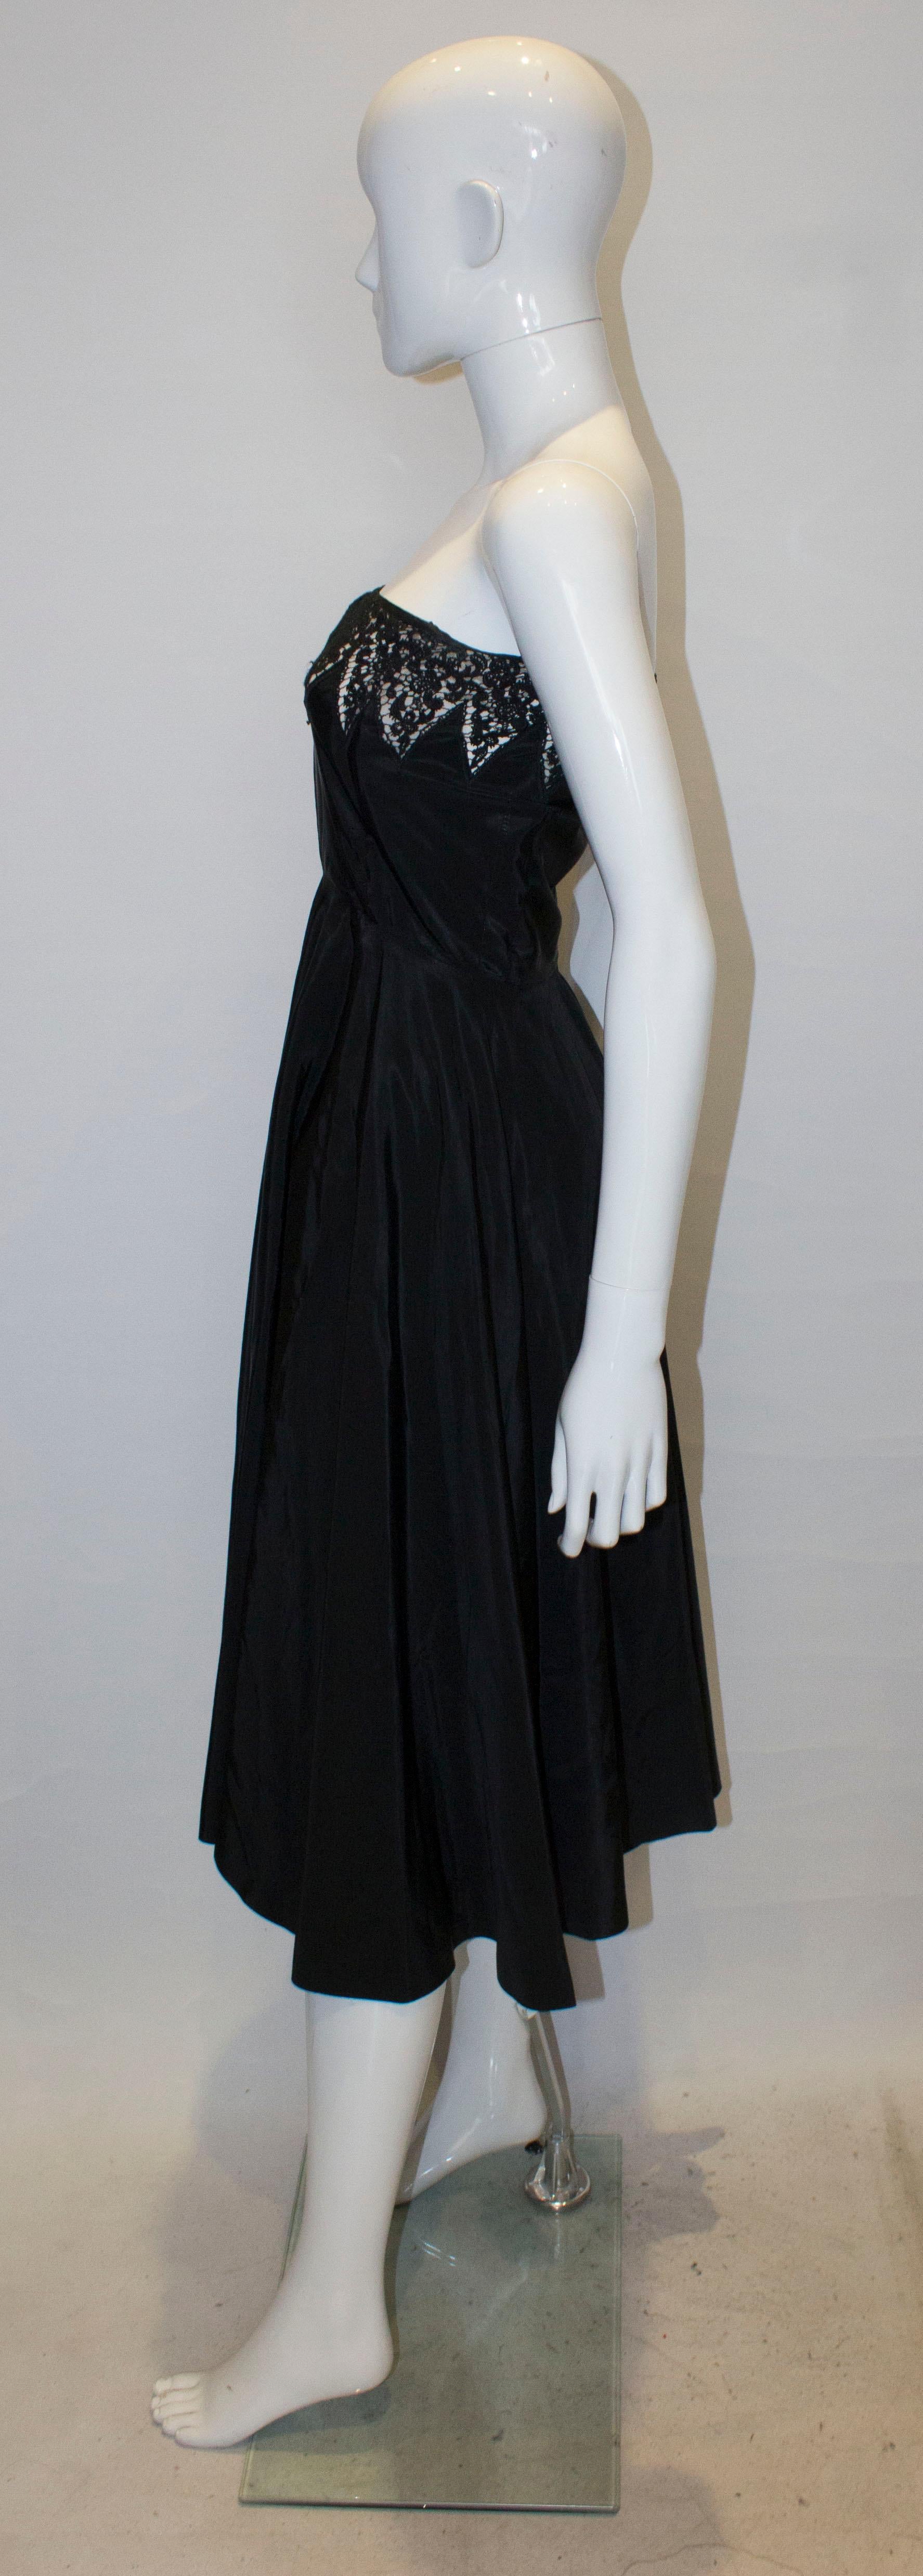 Black Vintage 1950s Cocktail Dress For Sale 1